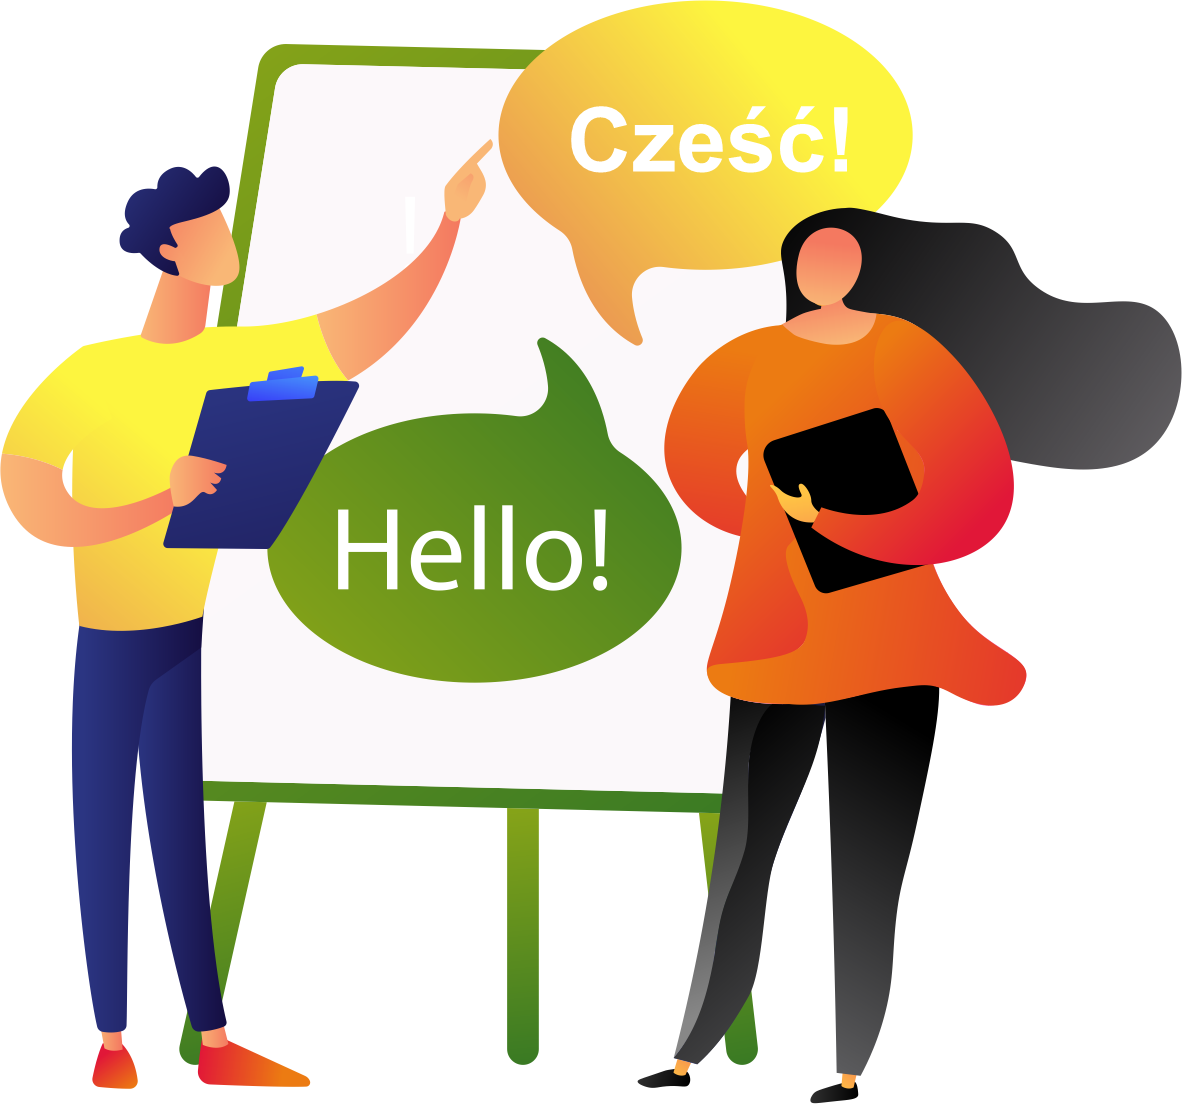 Polish and Engish language courses